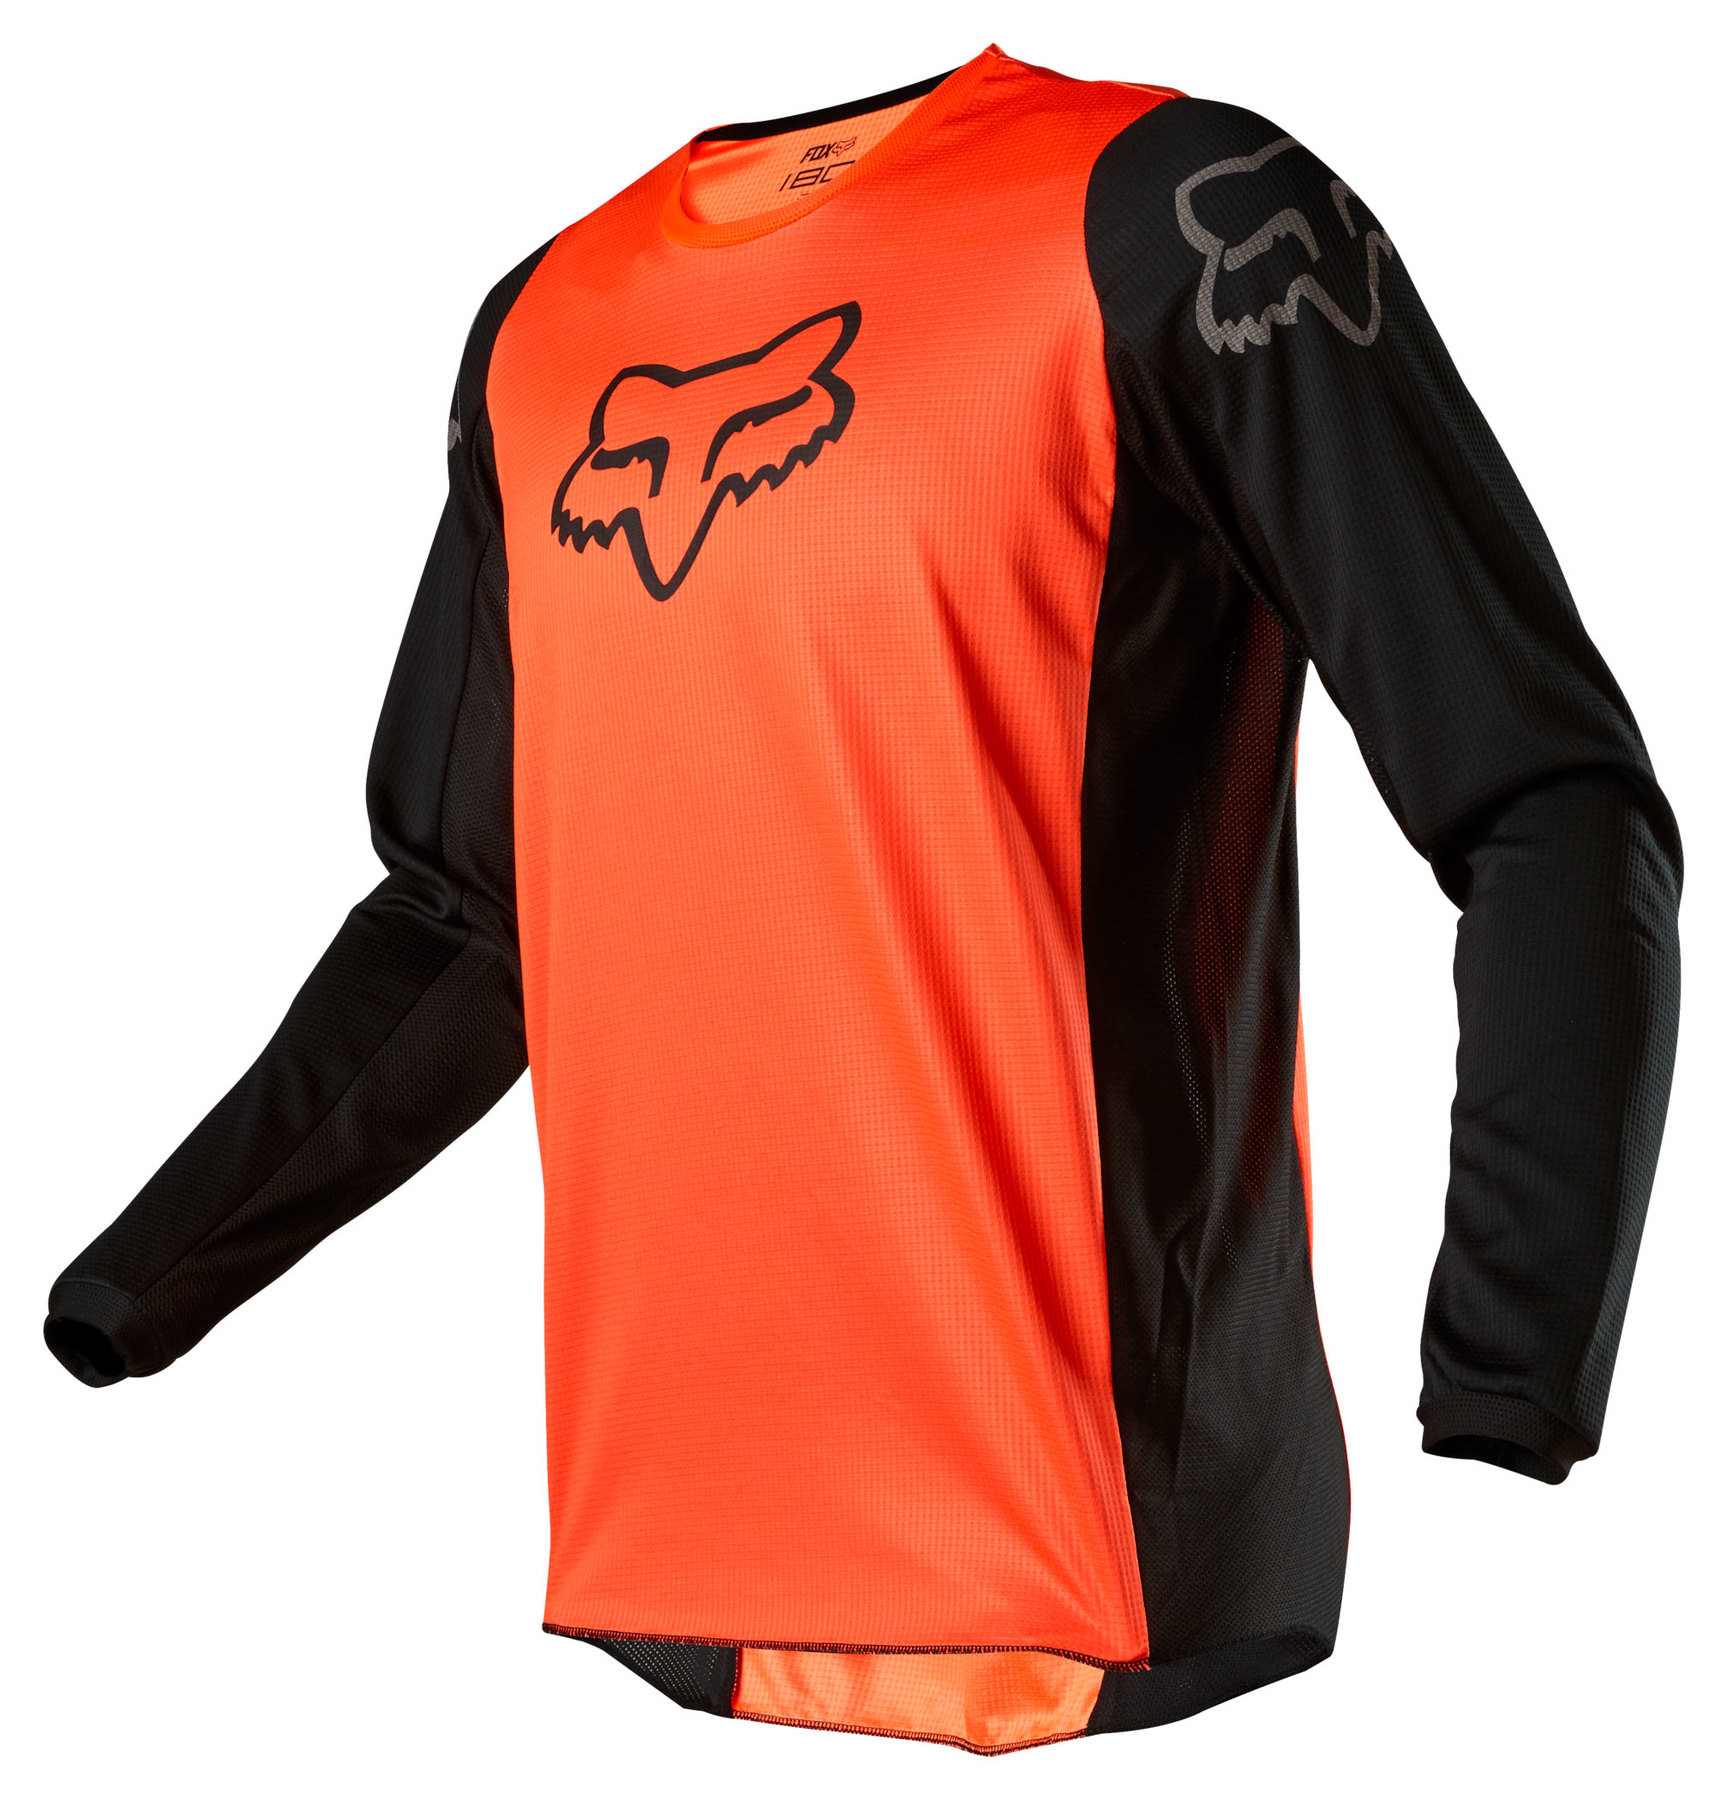 Фирма fox. Джерси Fox 180. Джерси Fox оранжевая. Джерси для мотокросса Fox. Fox Racing одежда.